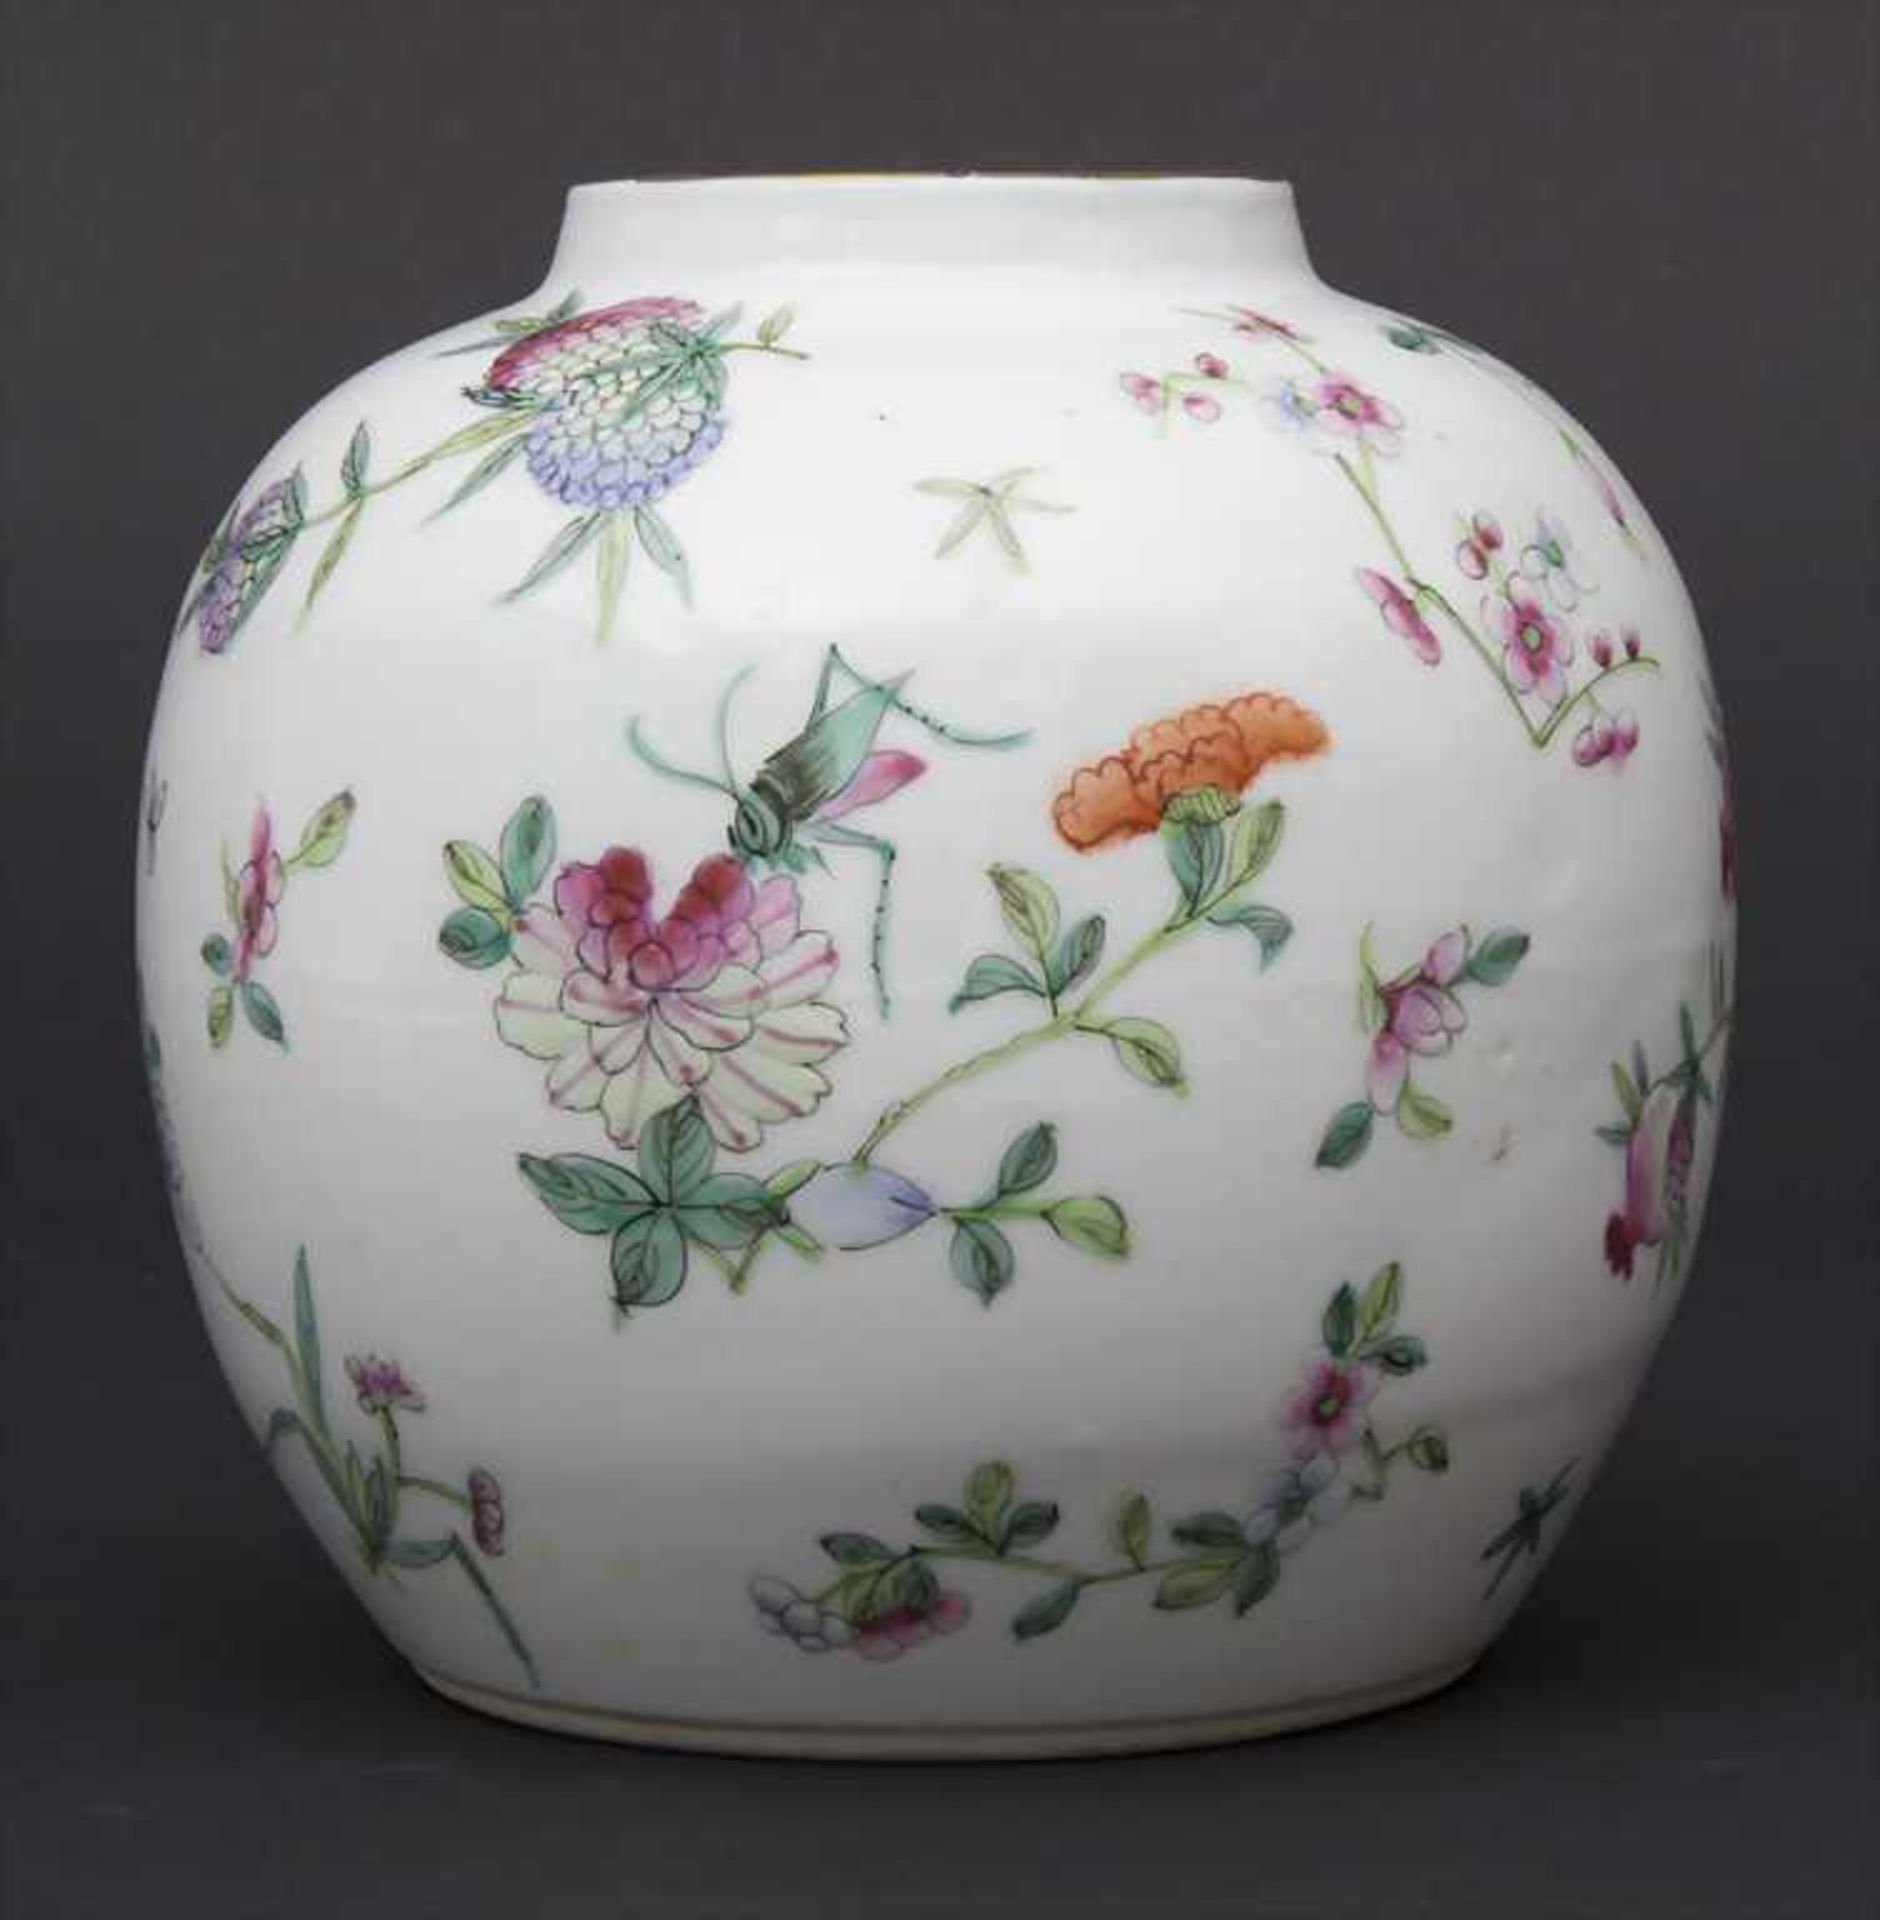 Ziervase, China, späte Qing-DynastieMaterial: Porzellan, polychrom mit Floral, Glückspfirsichen - Image 3 of 6